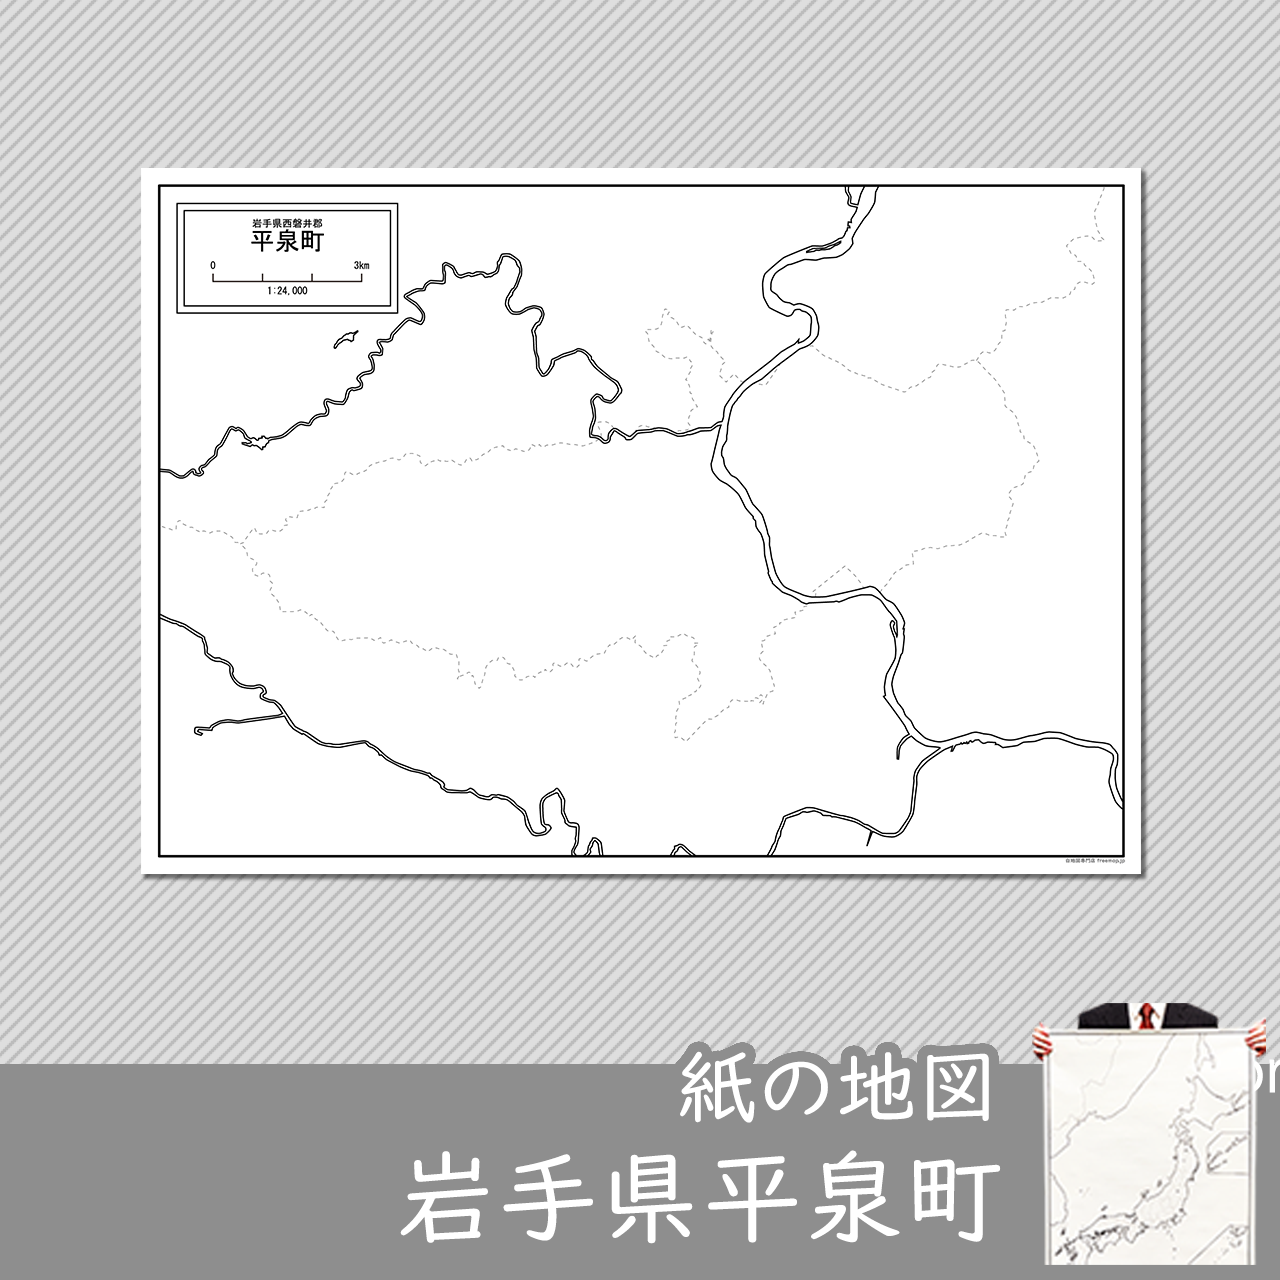 平泉町の紙の白地図のサムネイル